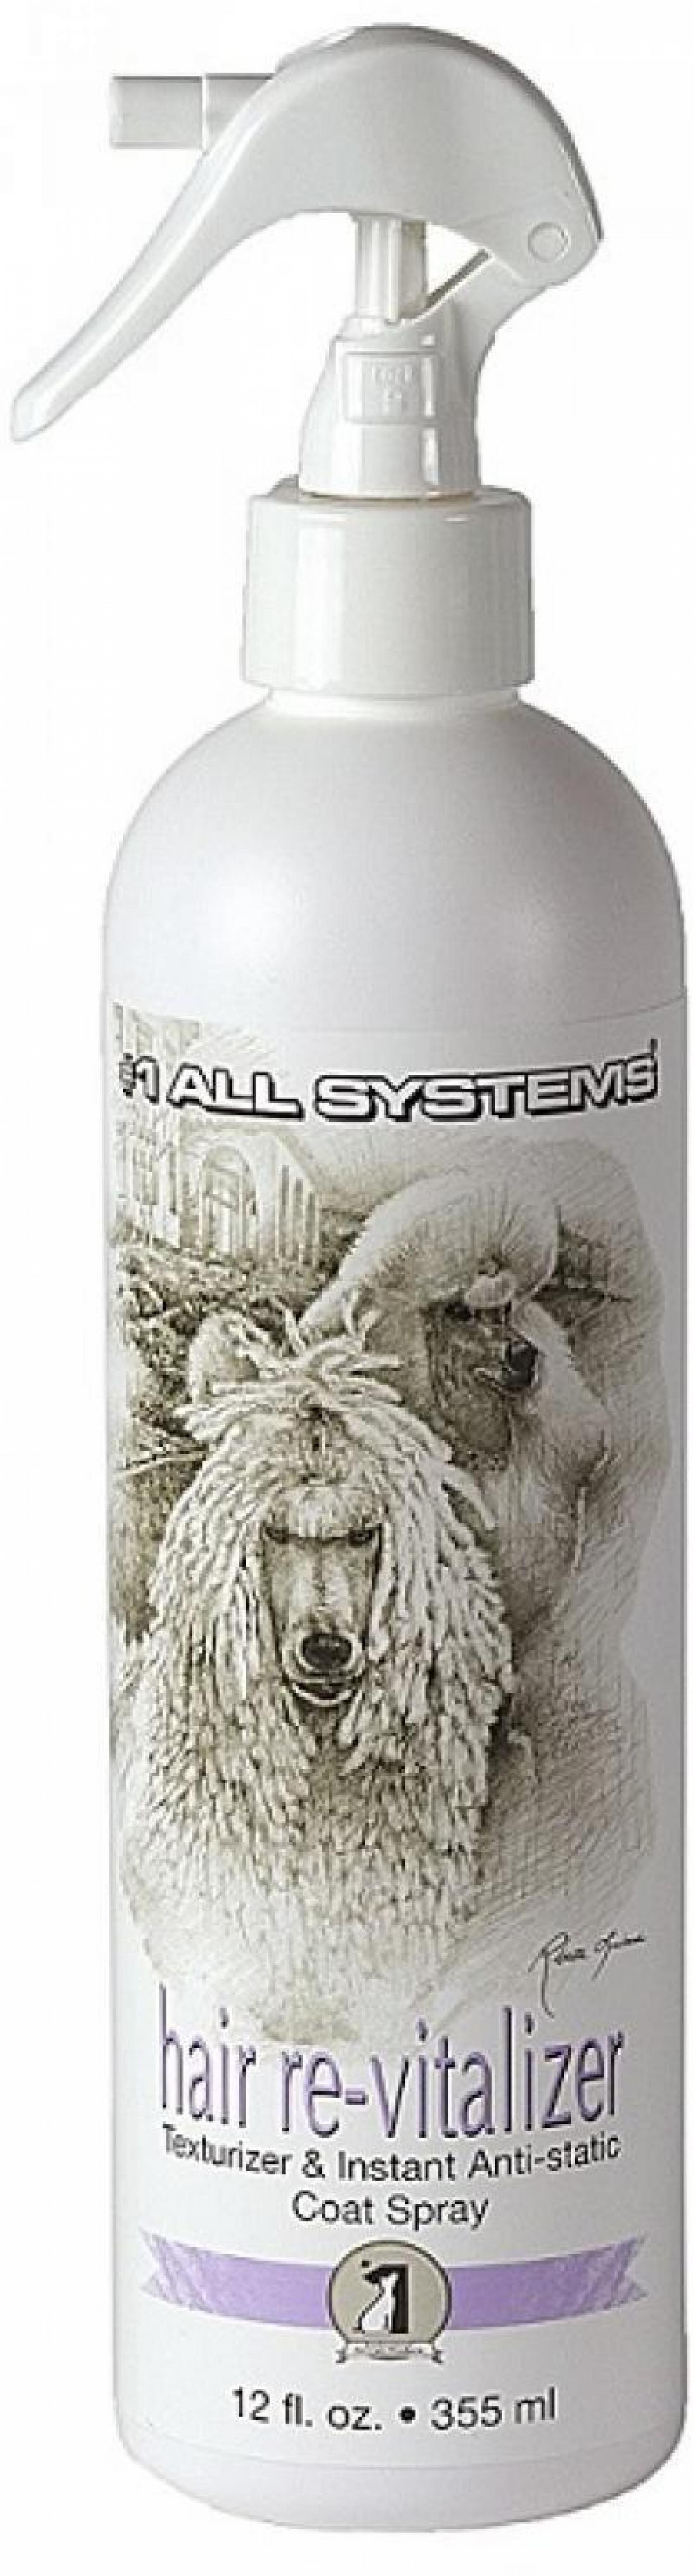 1 All Systems Hair revitalaizer антистатик  355 мл, 020010